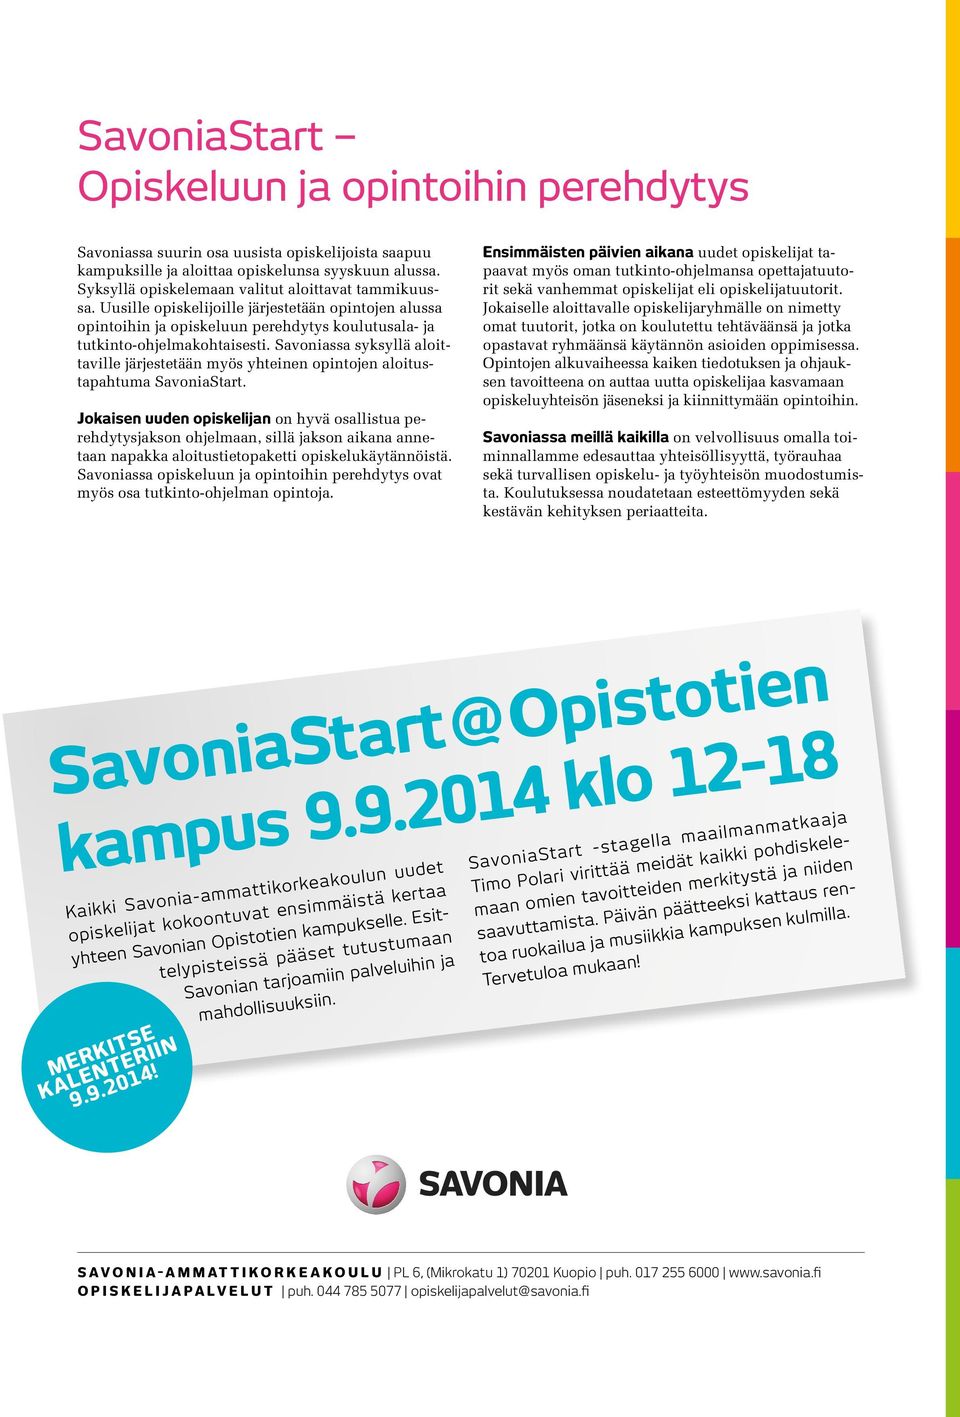 Savoniassa syksyllä aloittaville järjestetään myös yhteinen opintojen aloitustapahtuma SavoniaStart.